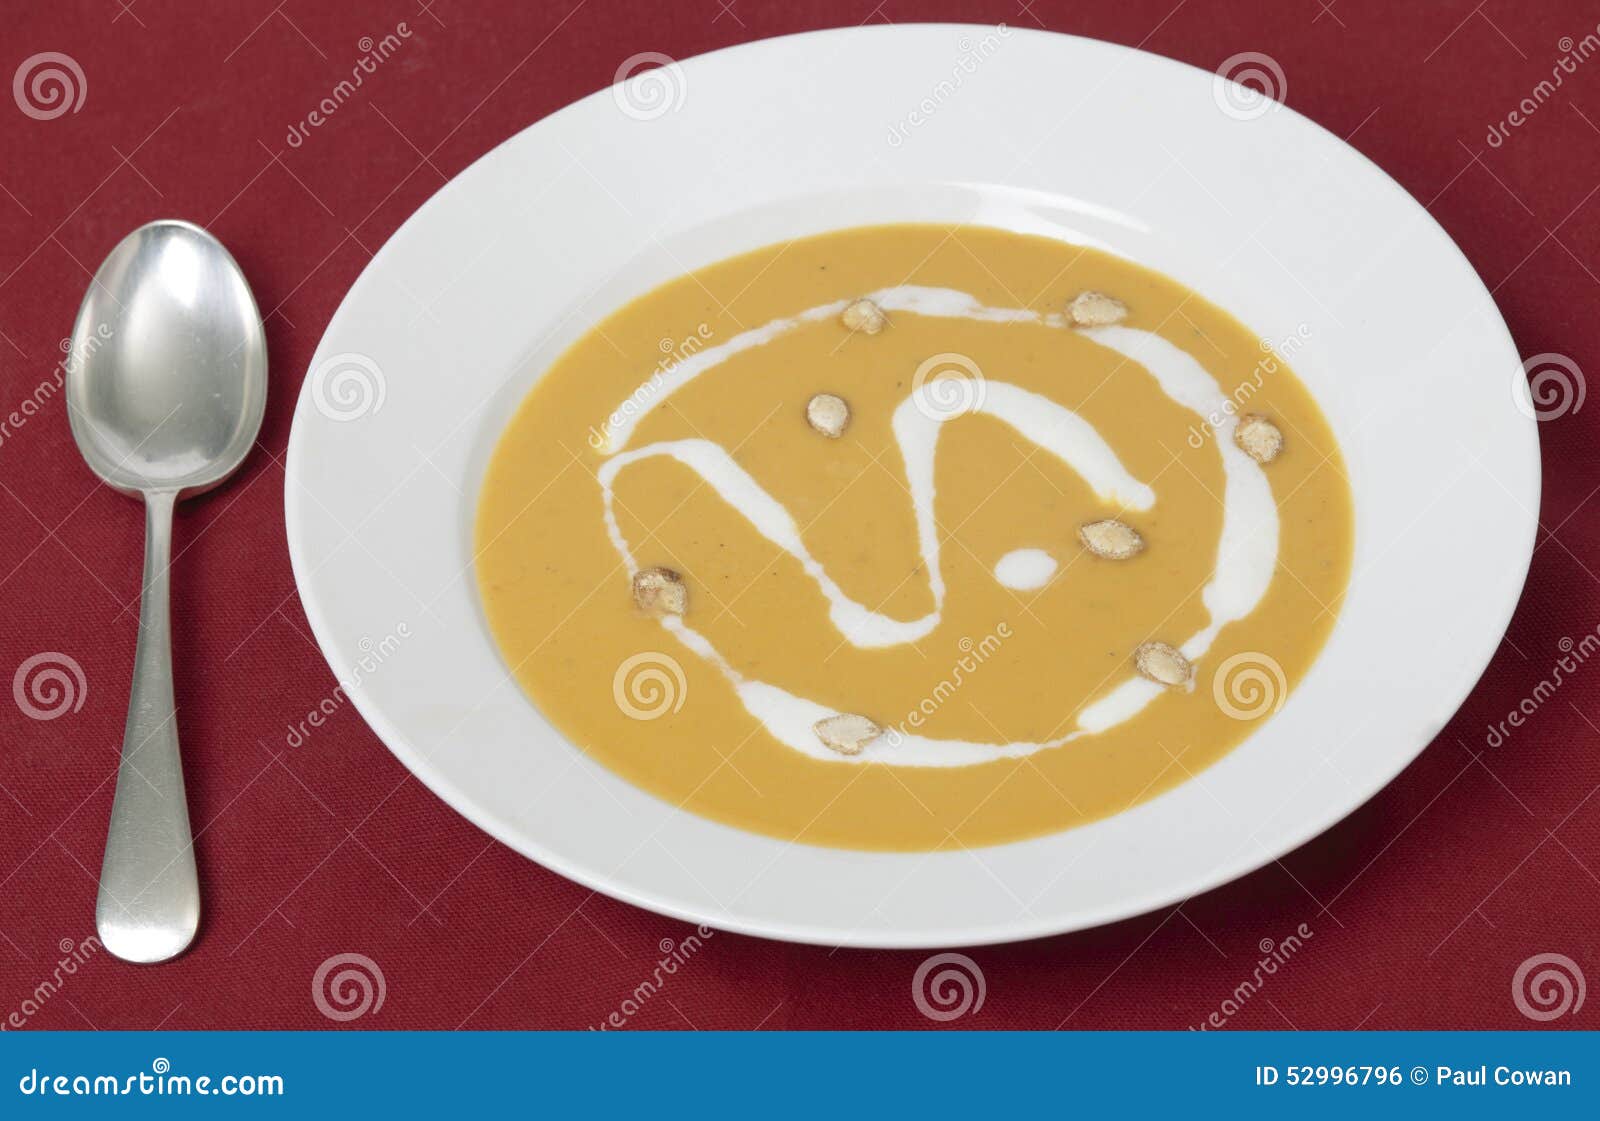 french squash soup bowl